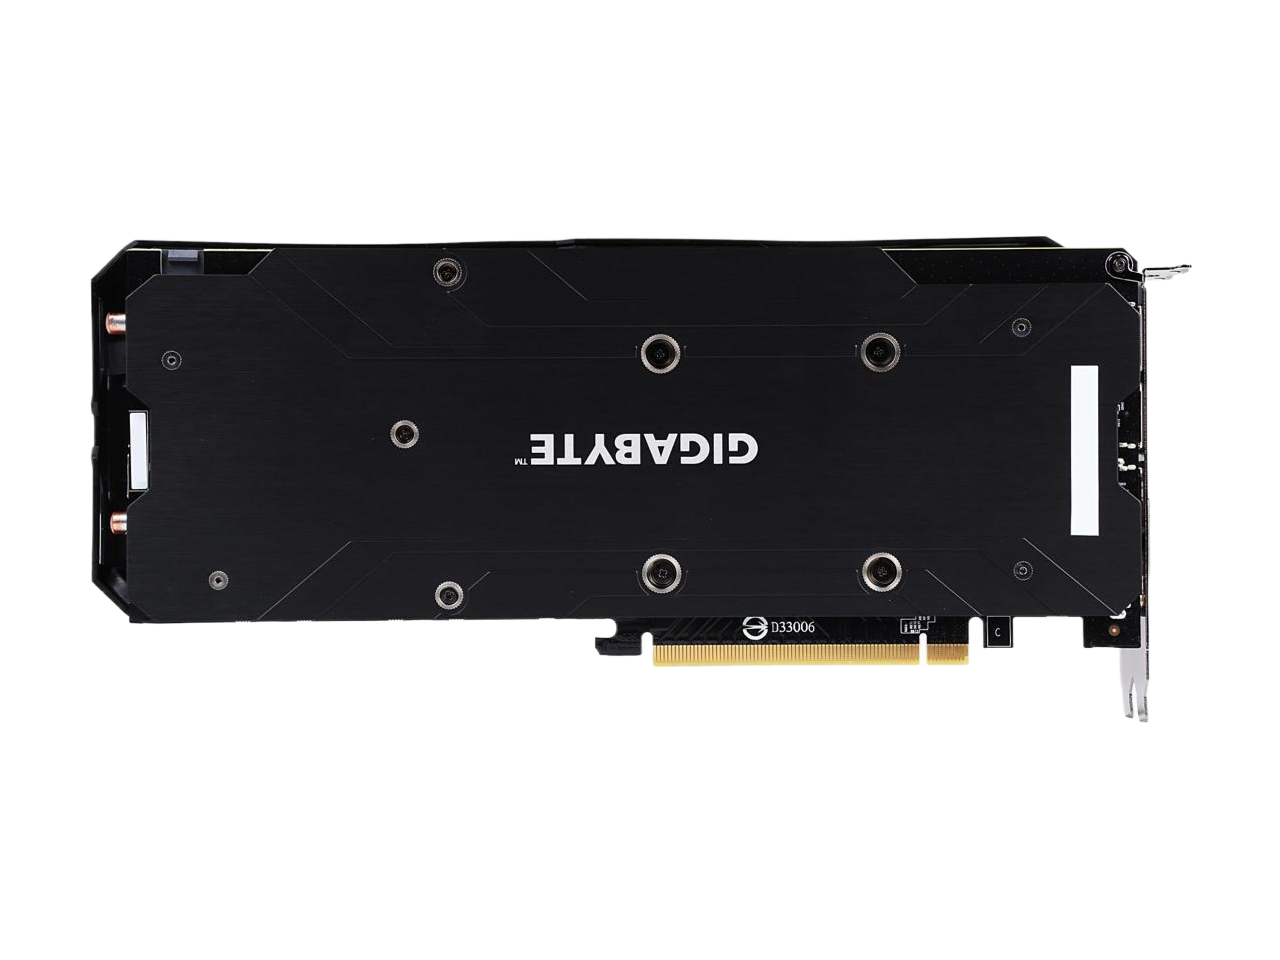 GIGABYTE GeForce GTX 1060 6GB GDDR5 PCI Express 3.0 x16 ATX Video Card GV-N1060G1 GAMING-6GD REV 2.0